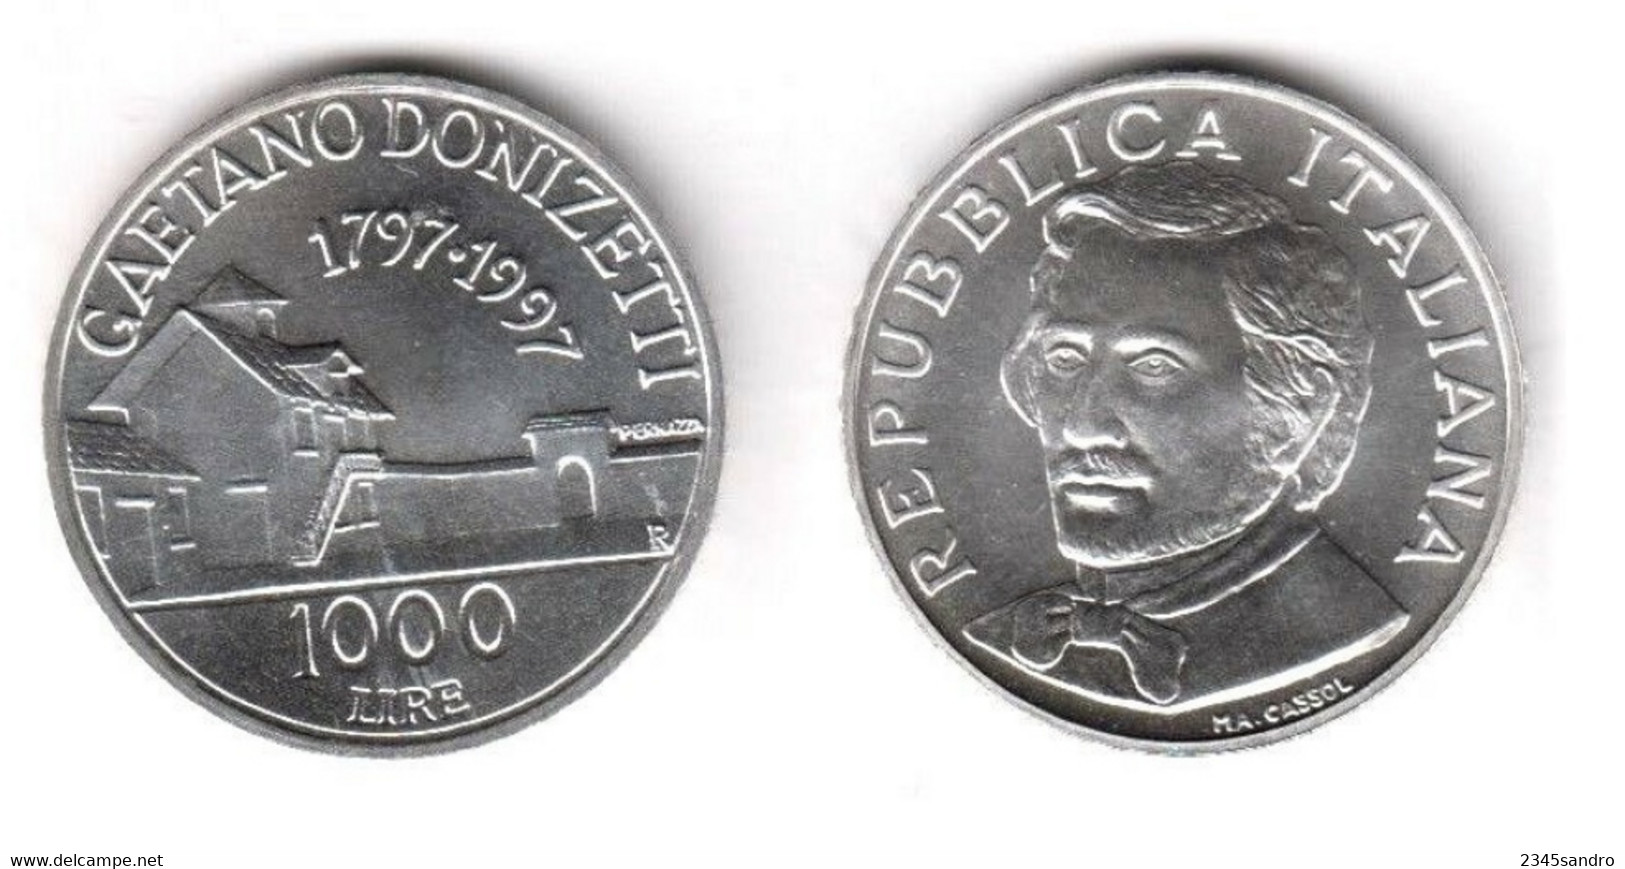 1000 LIRE 1997 "DONIZETTI" COMMEMORATIVA ARGENTO FDC, Uncirculated, Stempelglanz, Fleur De Coin REPUBBLICA ITALIANA - 1 000 Liras